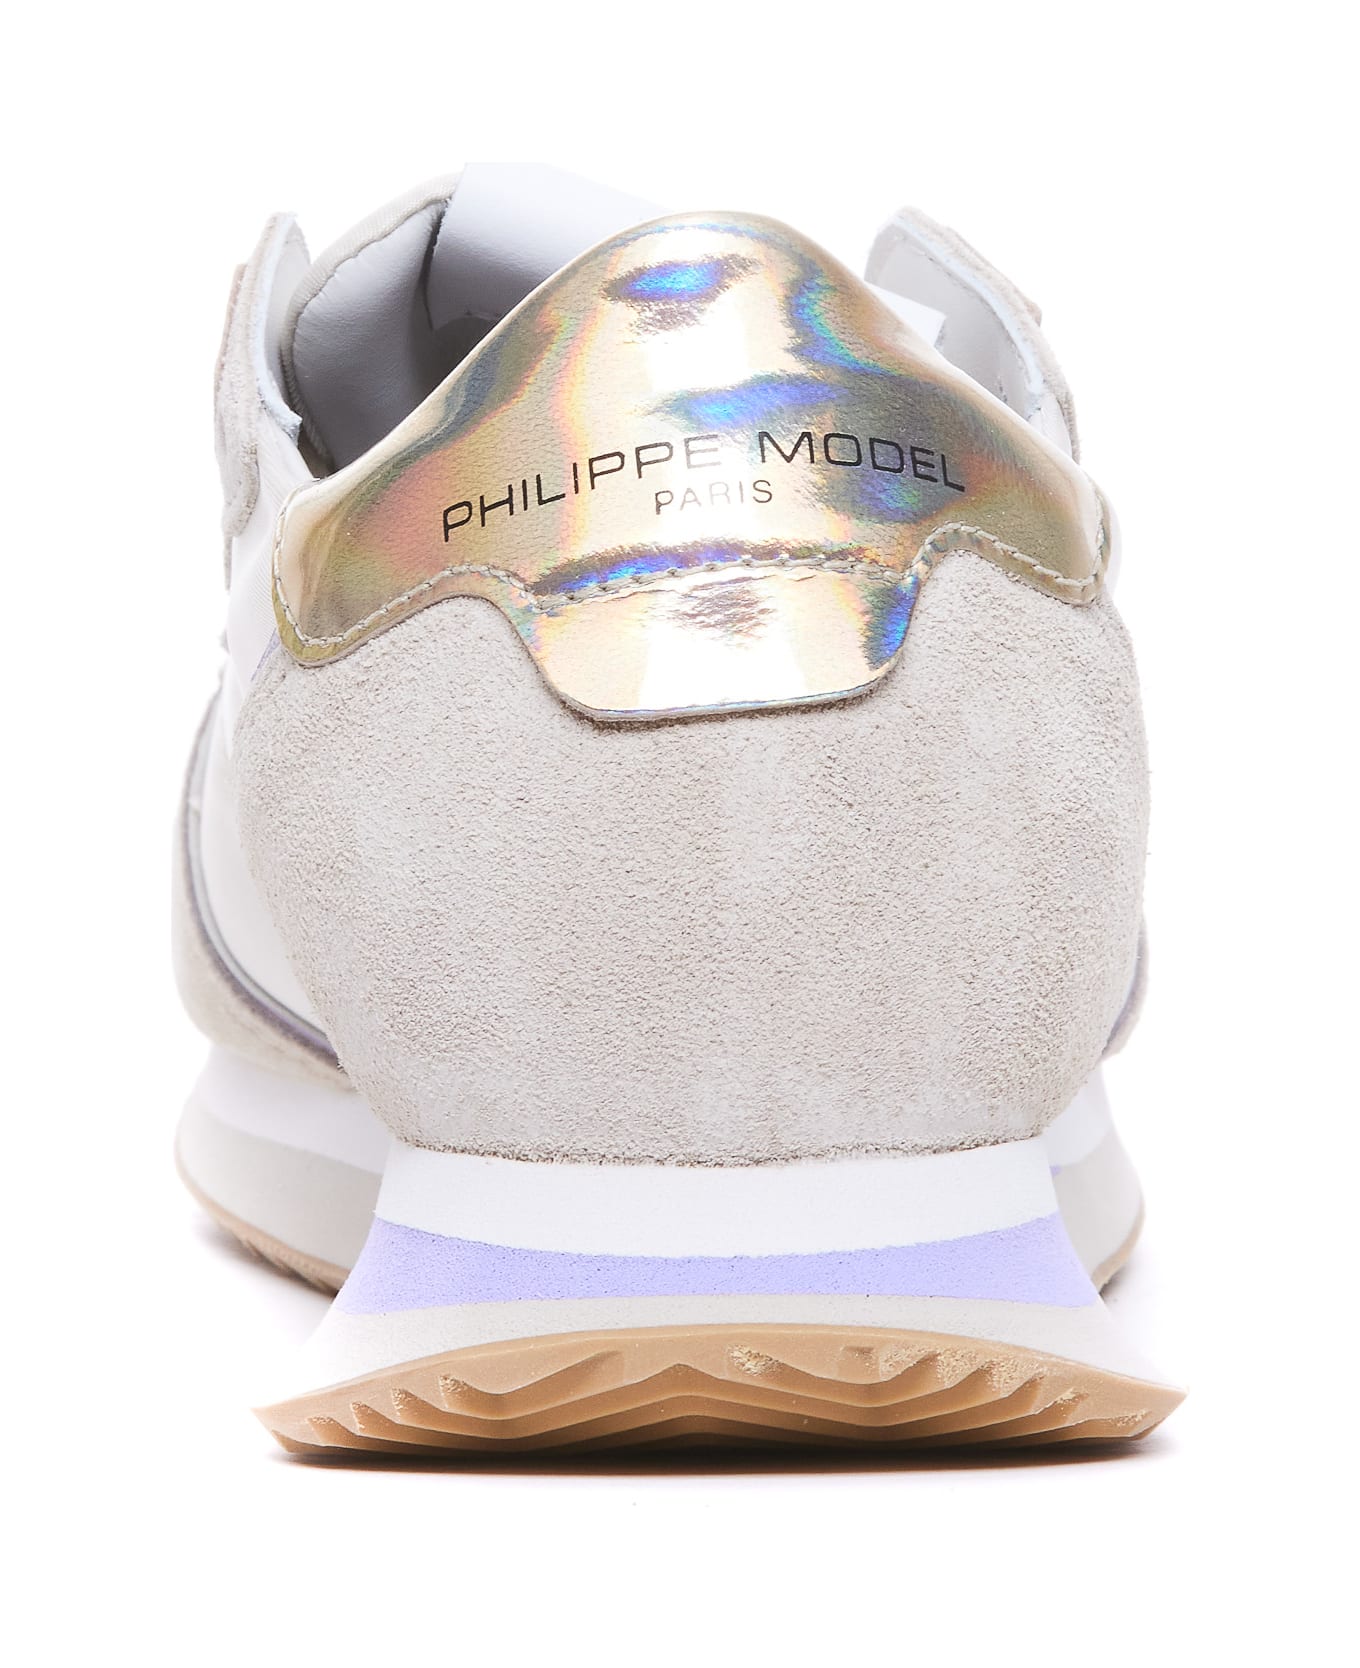 Philippe Model Trpx Sneakers - Beige スニーカー